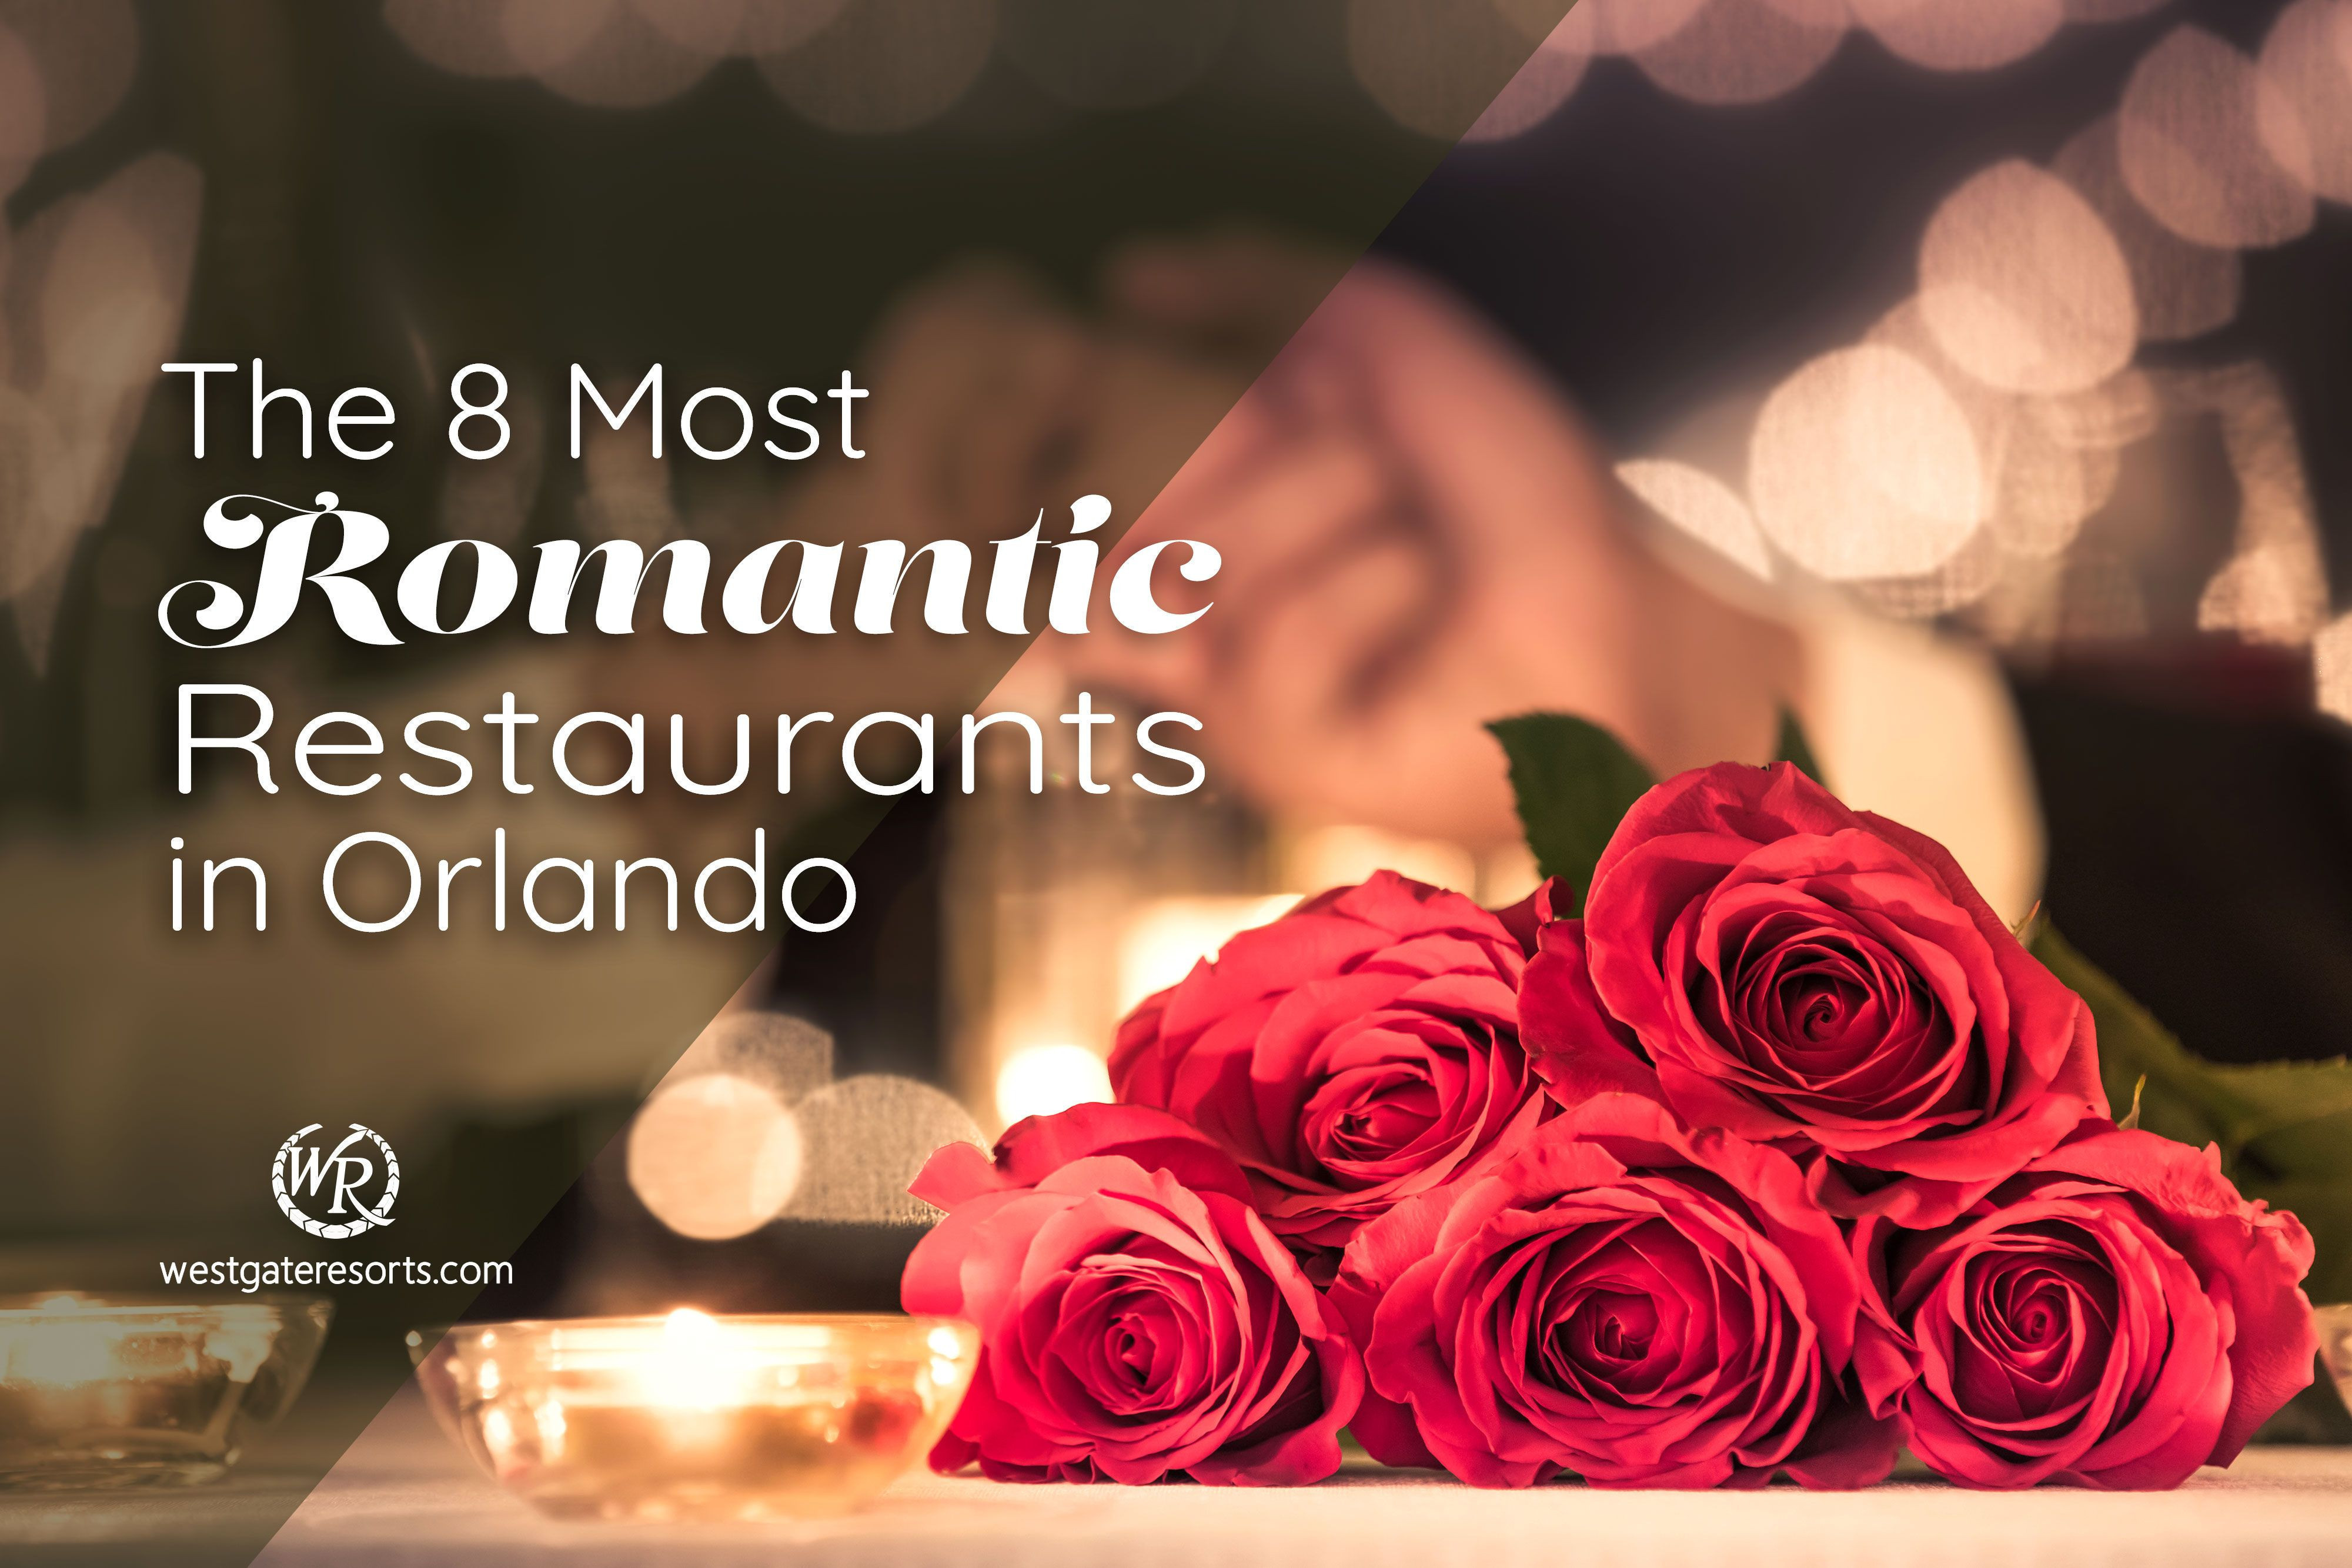 Los 8 restaurantes más románticos de Orlando